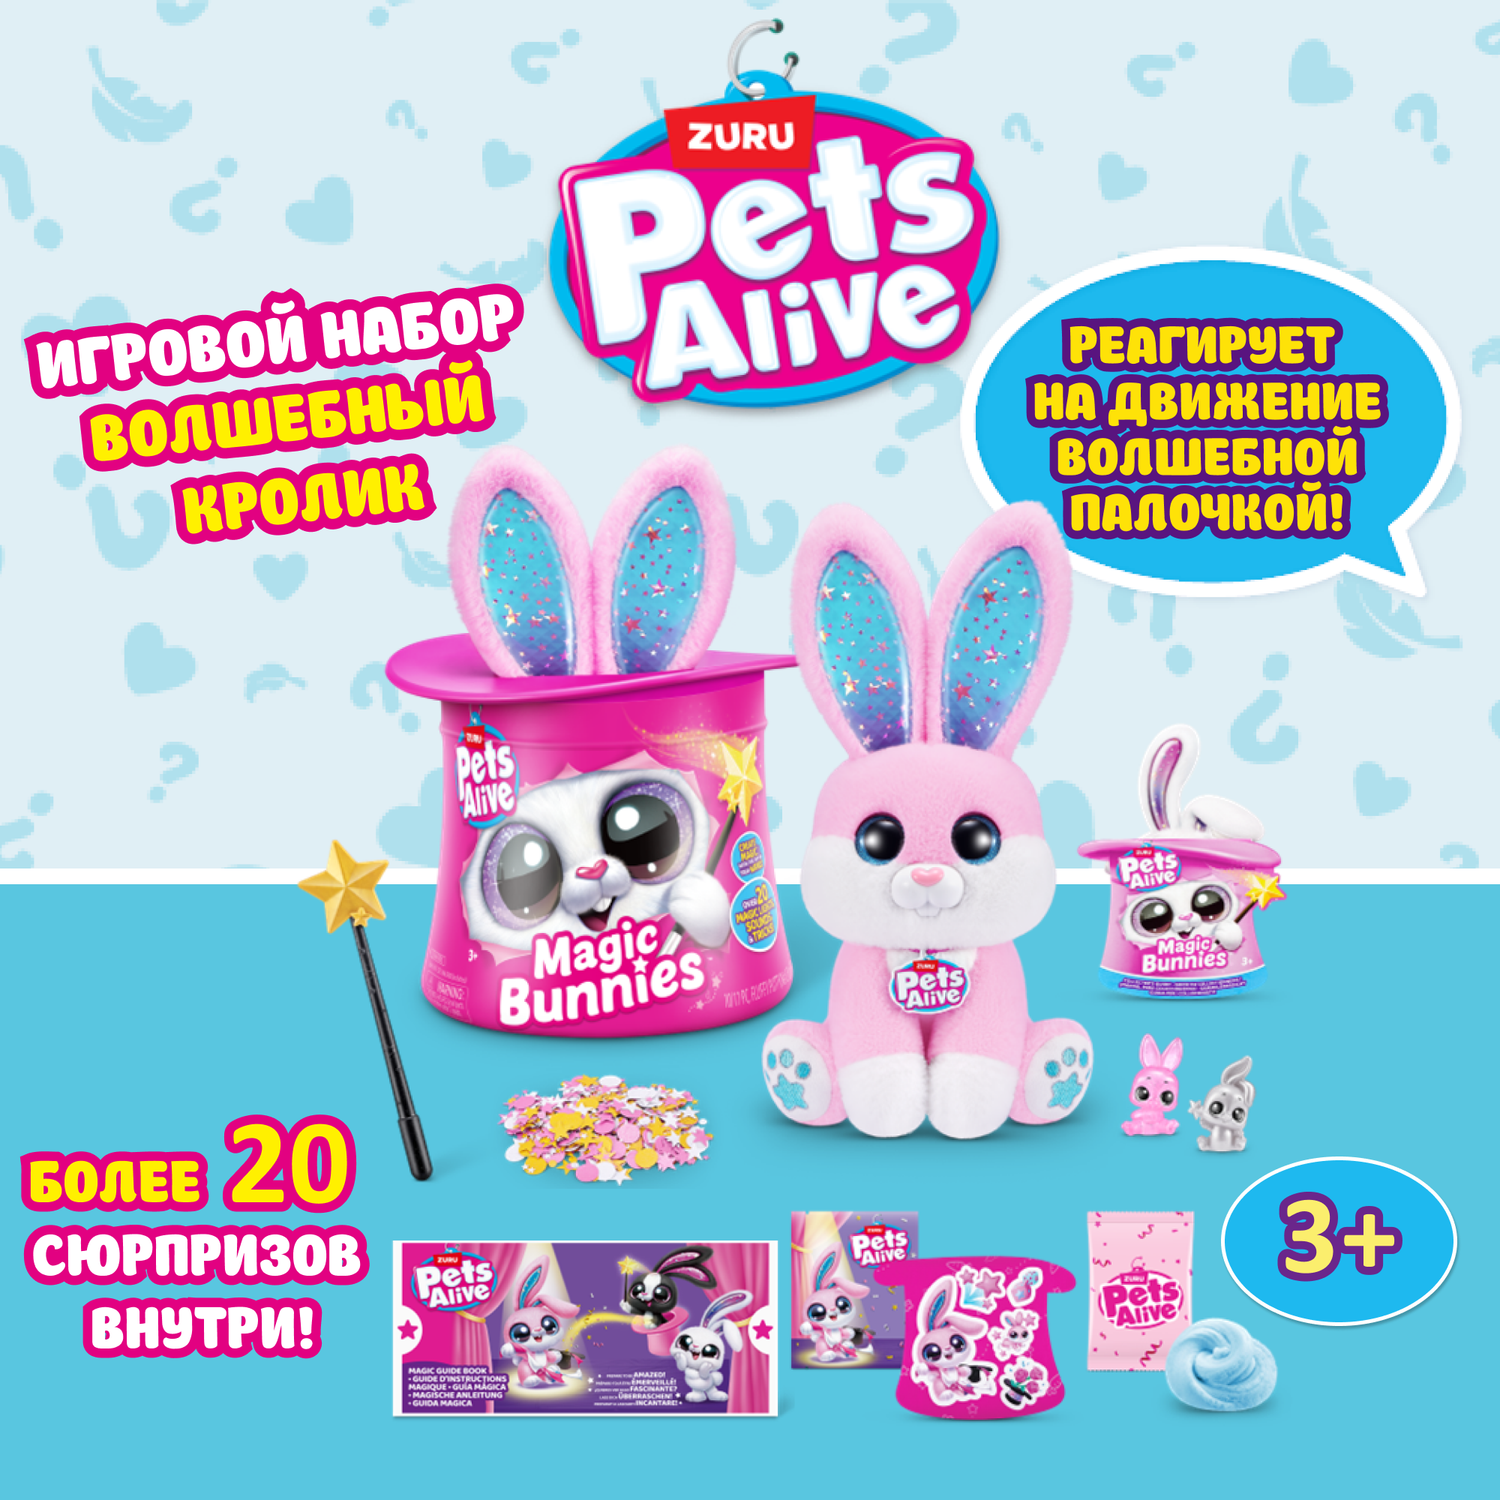 Игрушка Pets Alive Magic Bunny в непрозрачной упаковке (Сюрприз) 9549 - фото 1